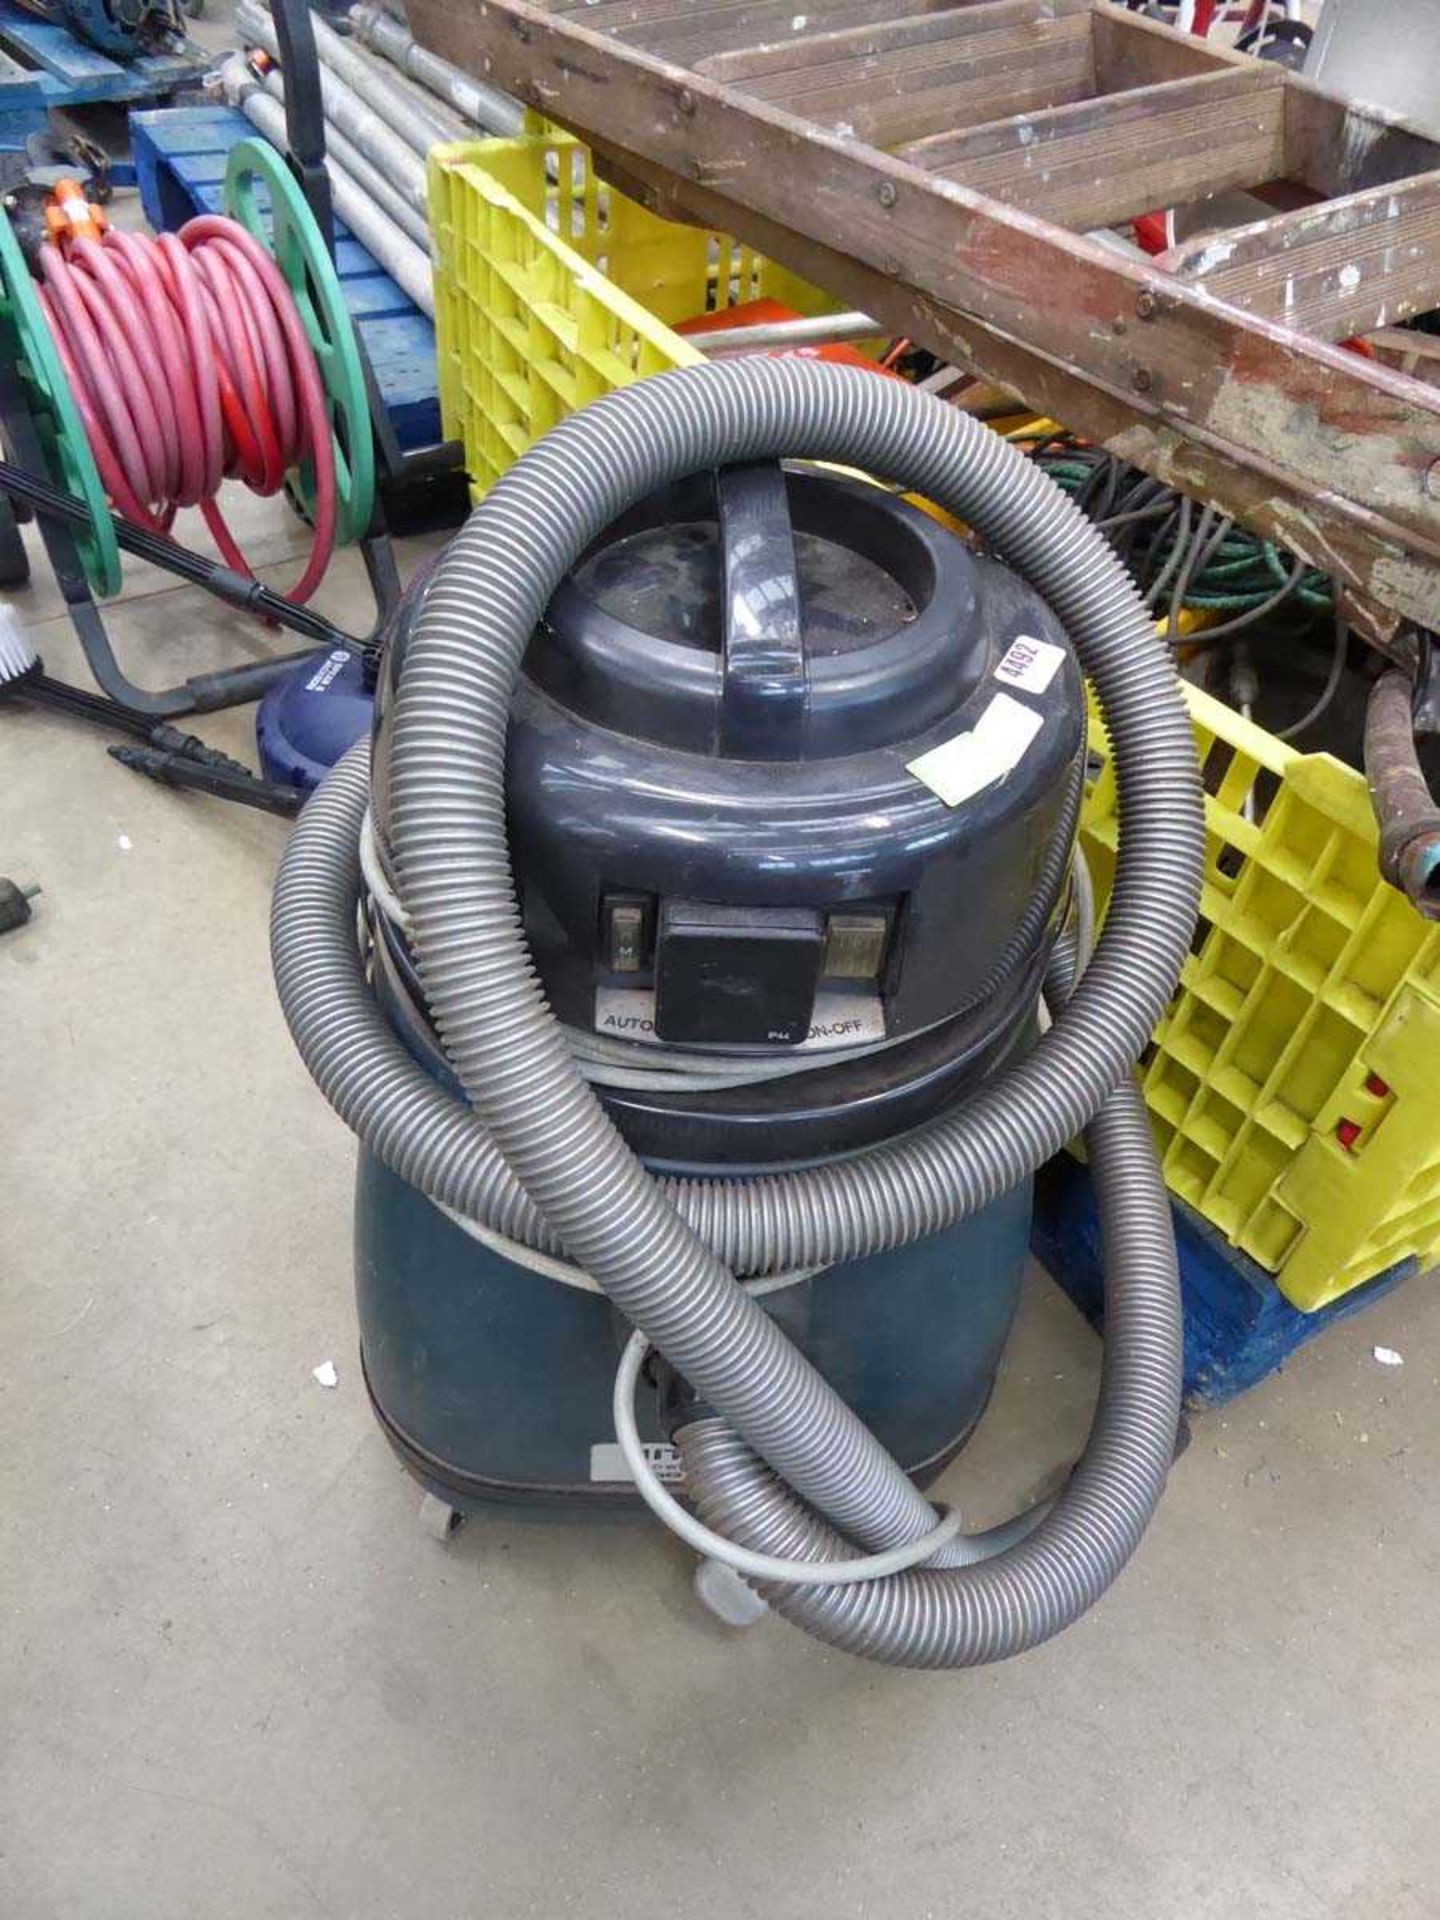 Hitachi vacuum cleaner